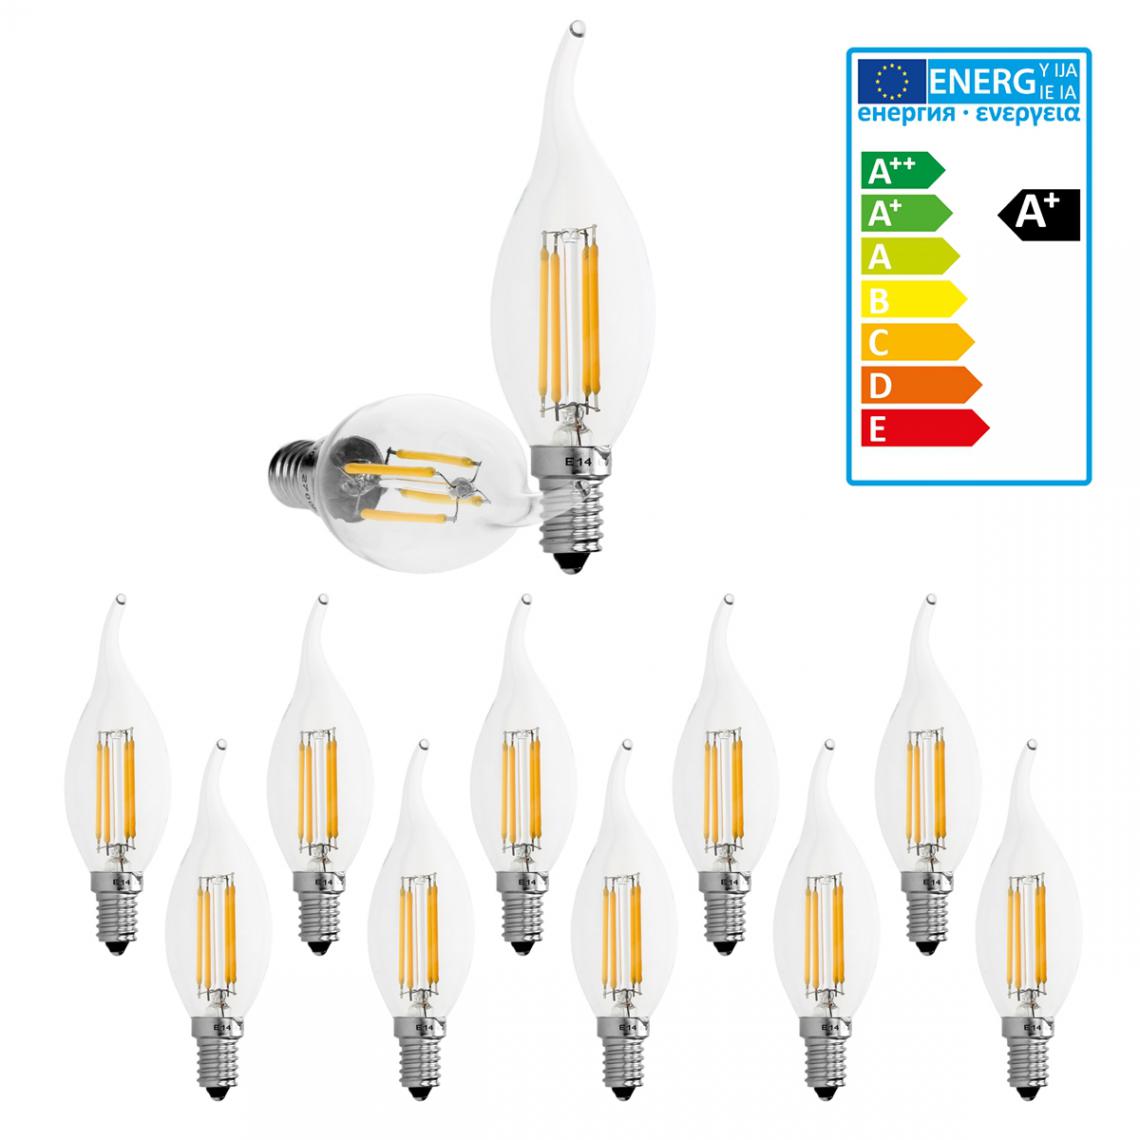 Ecd Germany - 10 x Lampe LED rafale de vent filament de bougie E14 4W blanc chaud - Ampoules LED